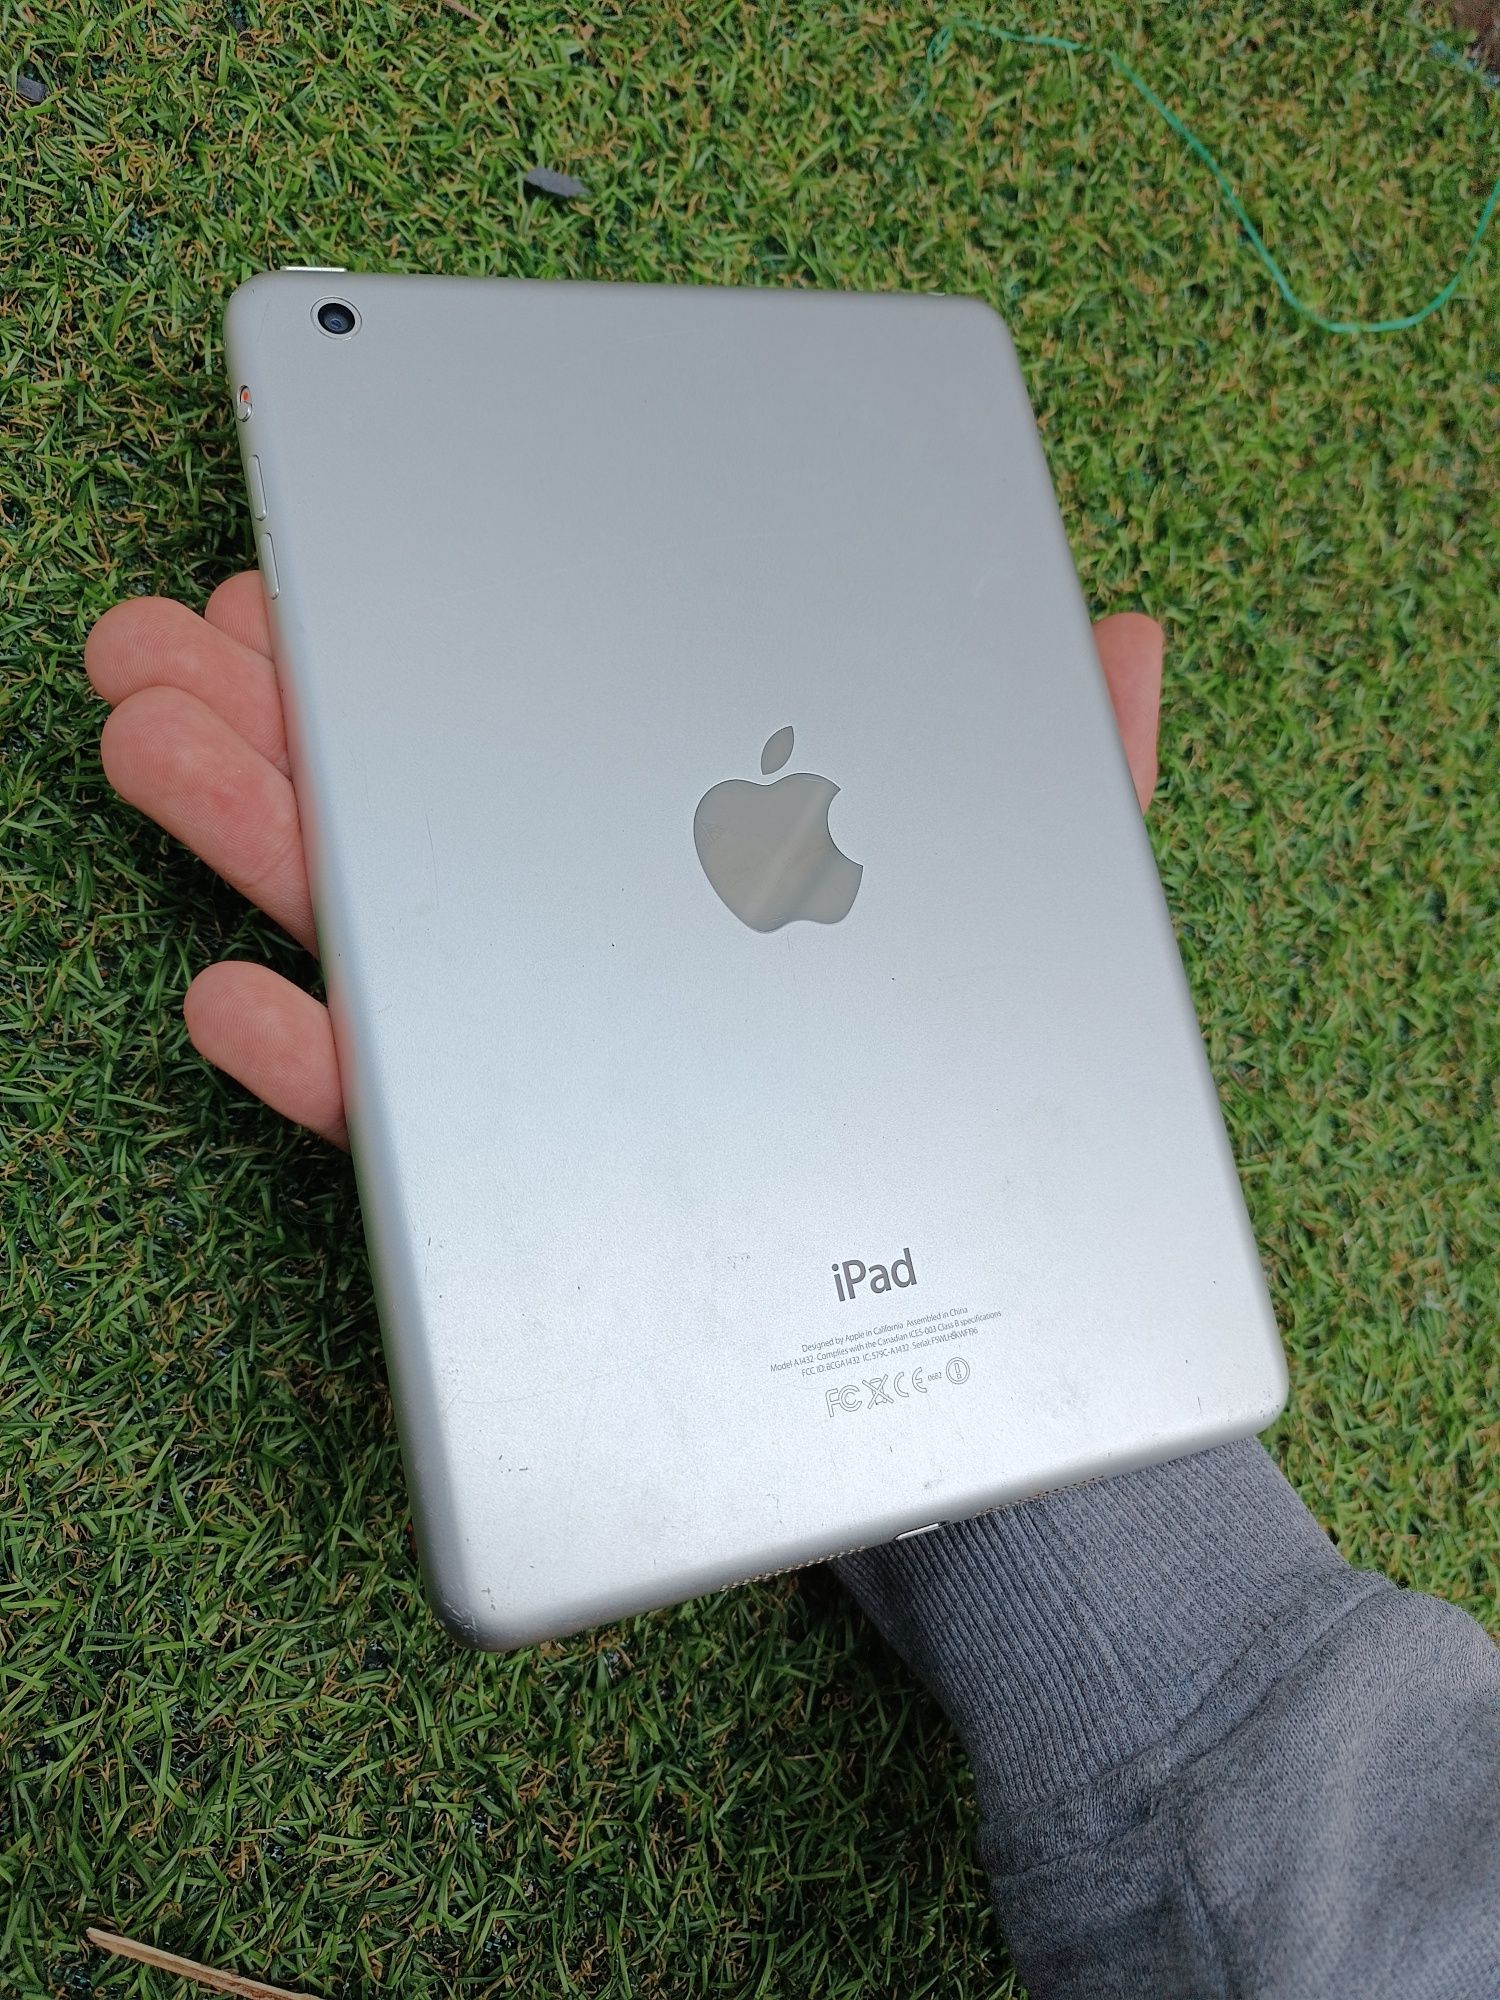 IPad mini model A1432 на запчастини iphone apple ipad айпад айфон